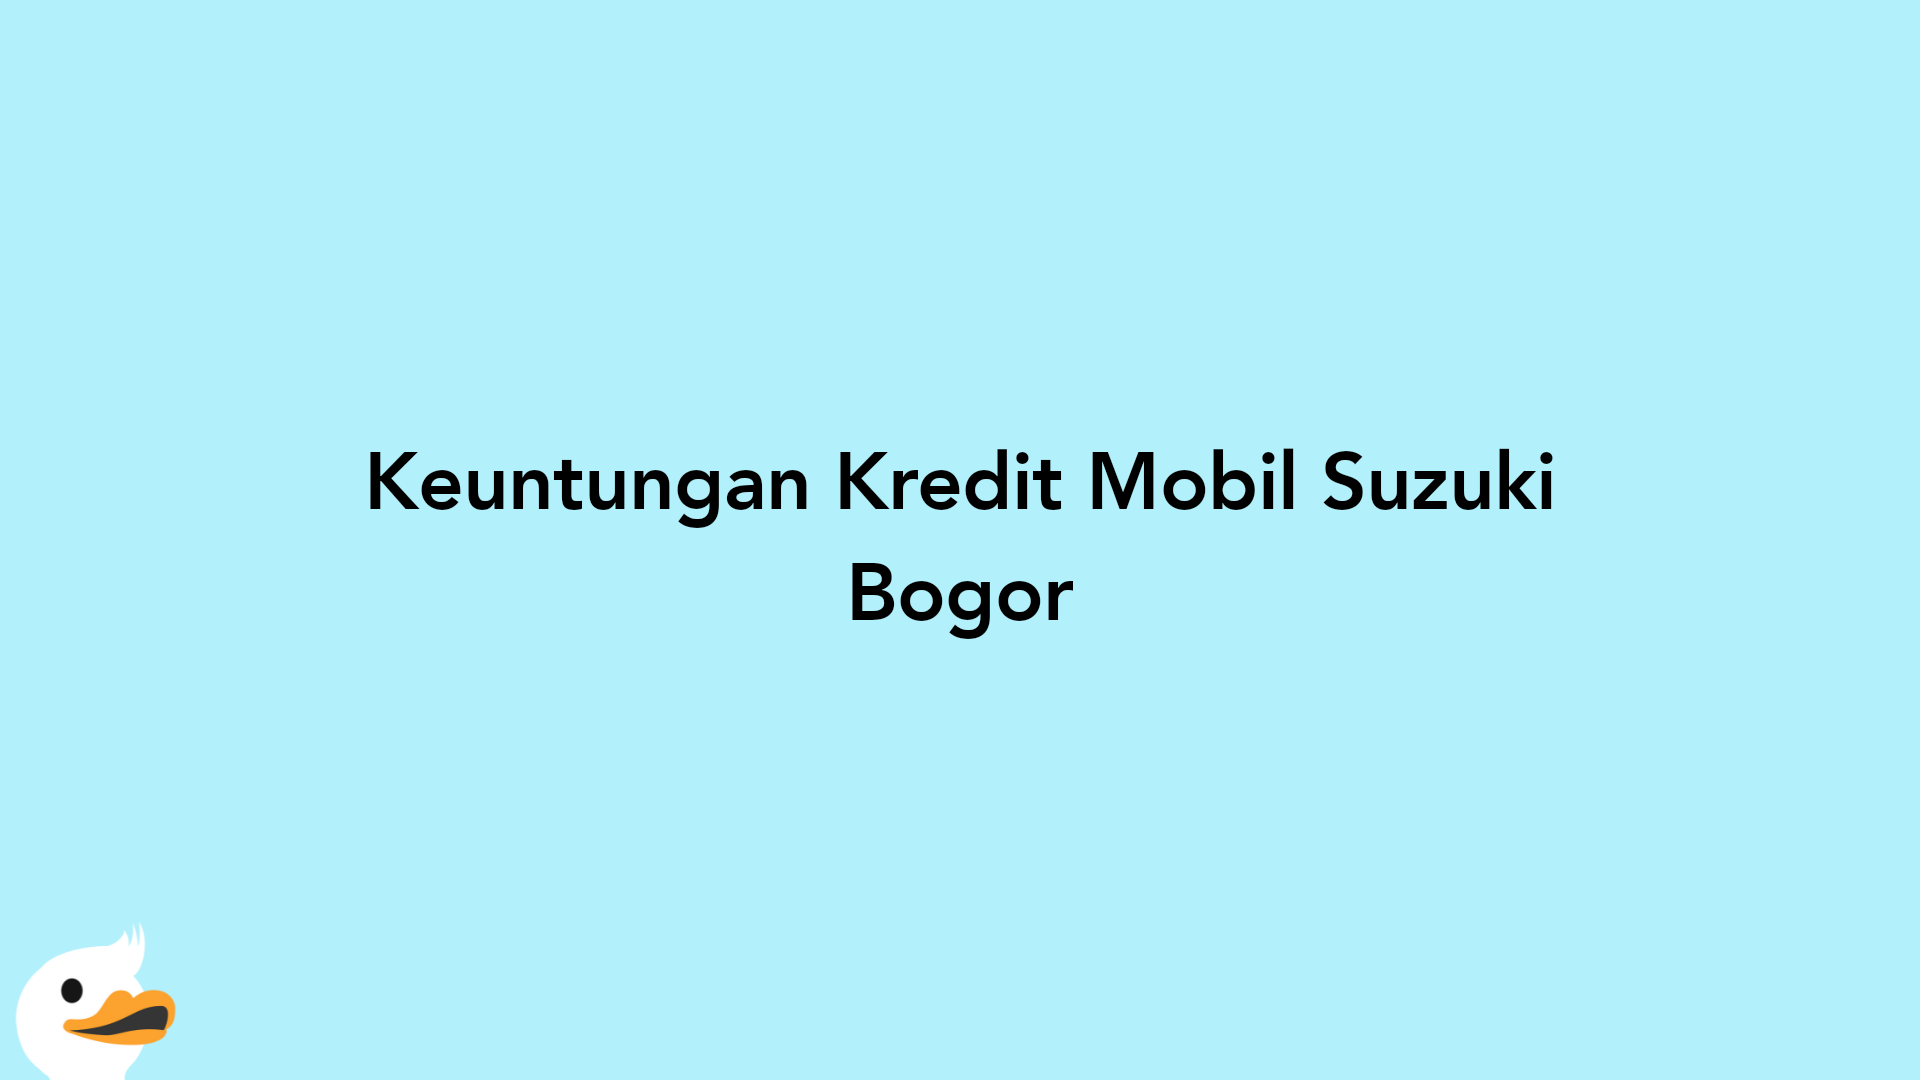 Keuntungan Kredit Mobil Suzuki Bogor